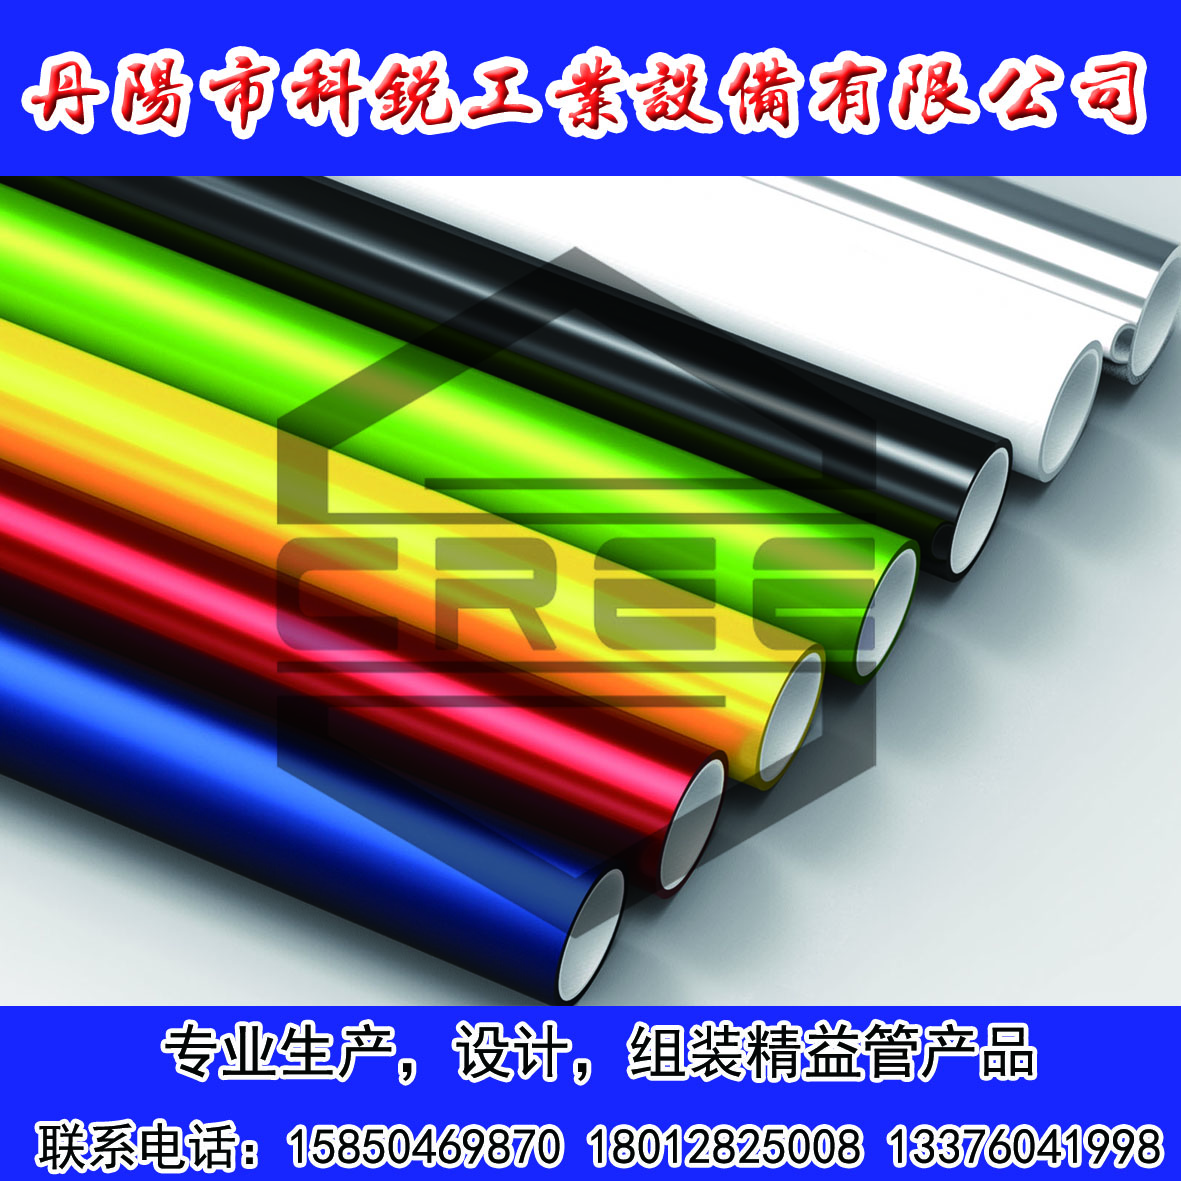 供应用于的各种颜色精益管柔性线棒，江苏防静电和导电精益管，精益管组装工作台